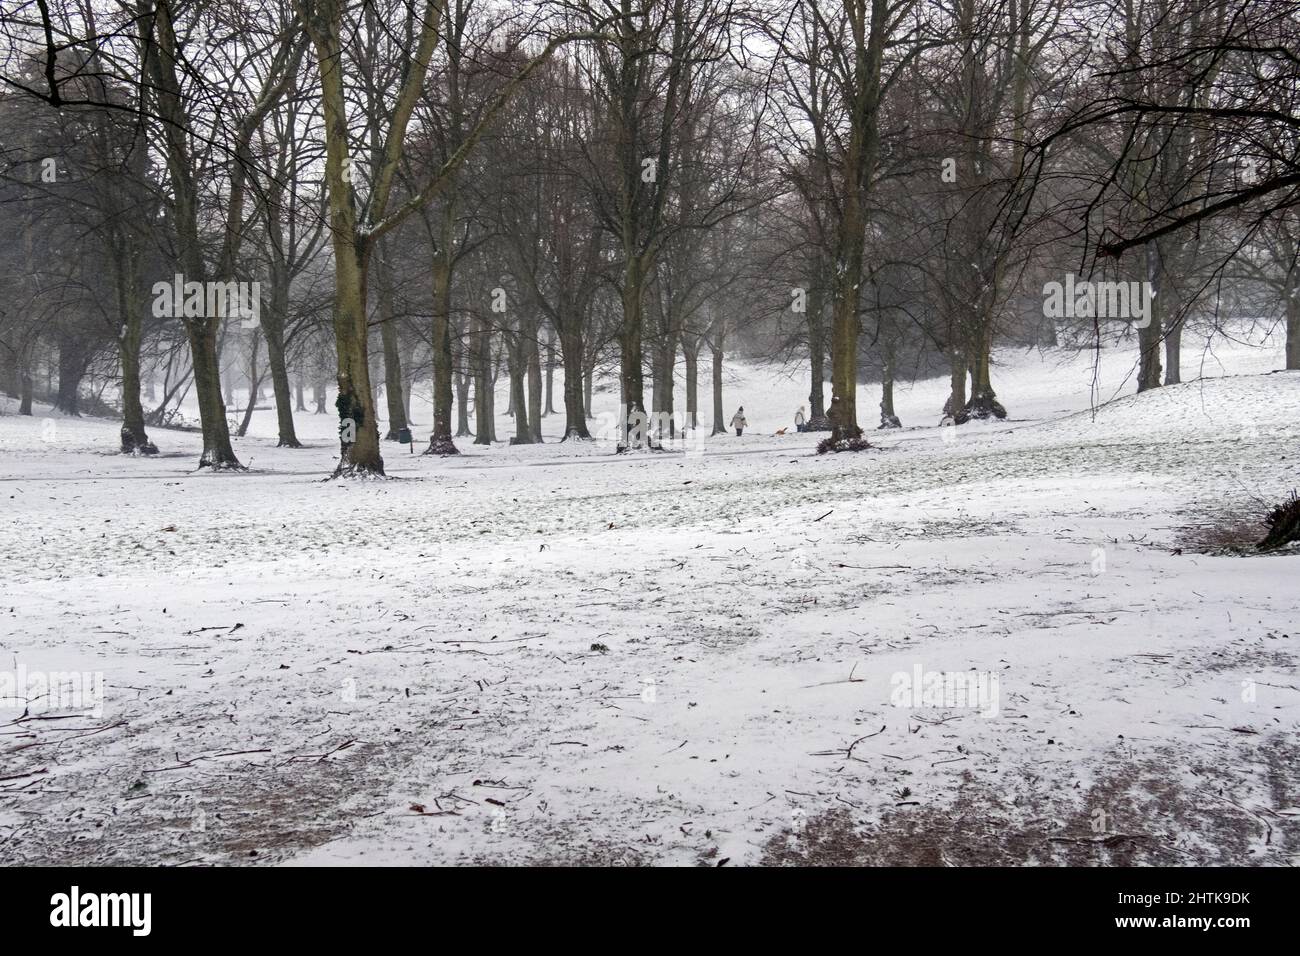 La nieve cae en Ashcombe Park en Weston-super-Mare, Reino Unido, el 1 de marzo de 2018 durante la tormenta llamada “La Bestia del Este” Foto de stock